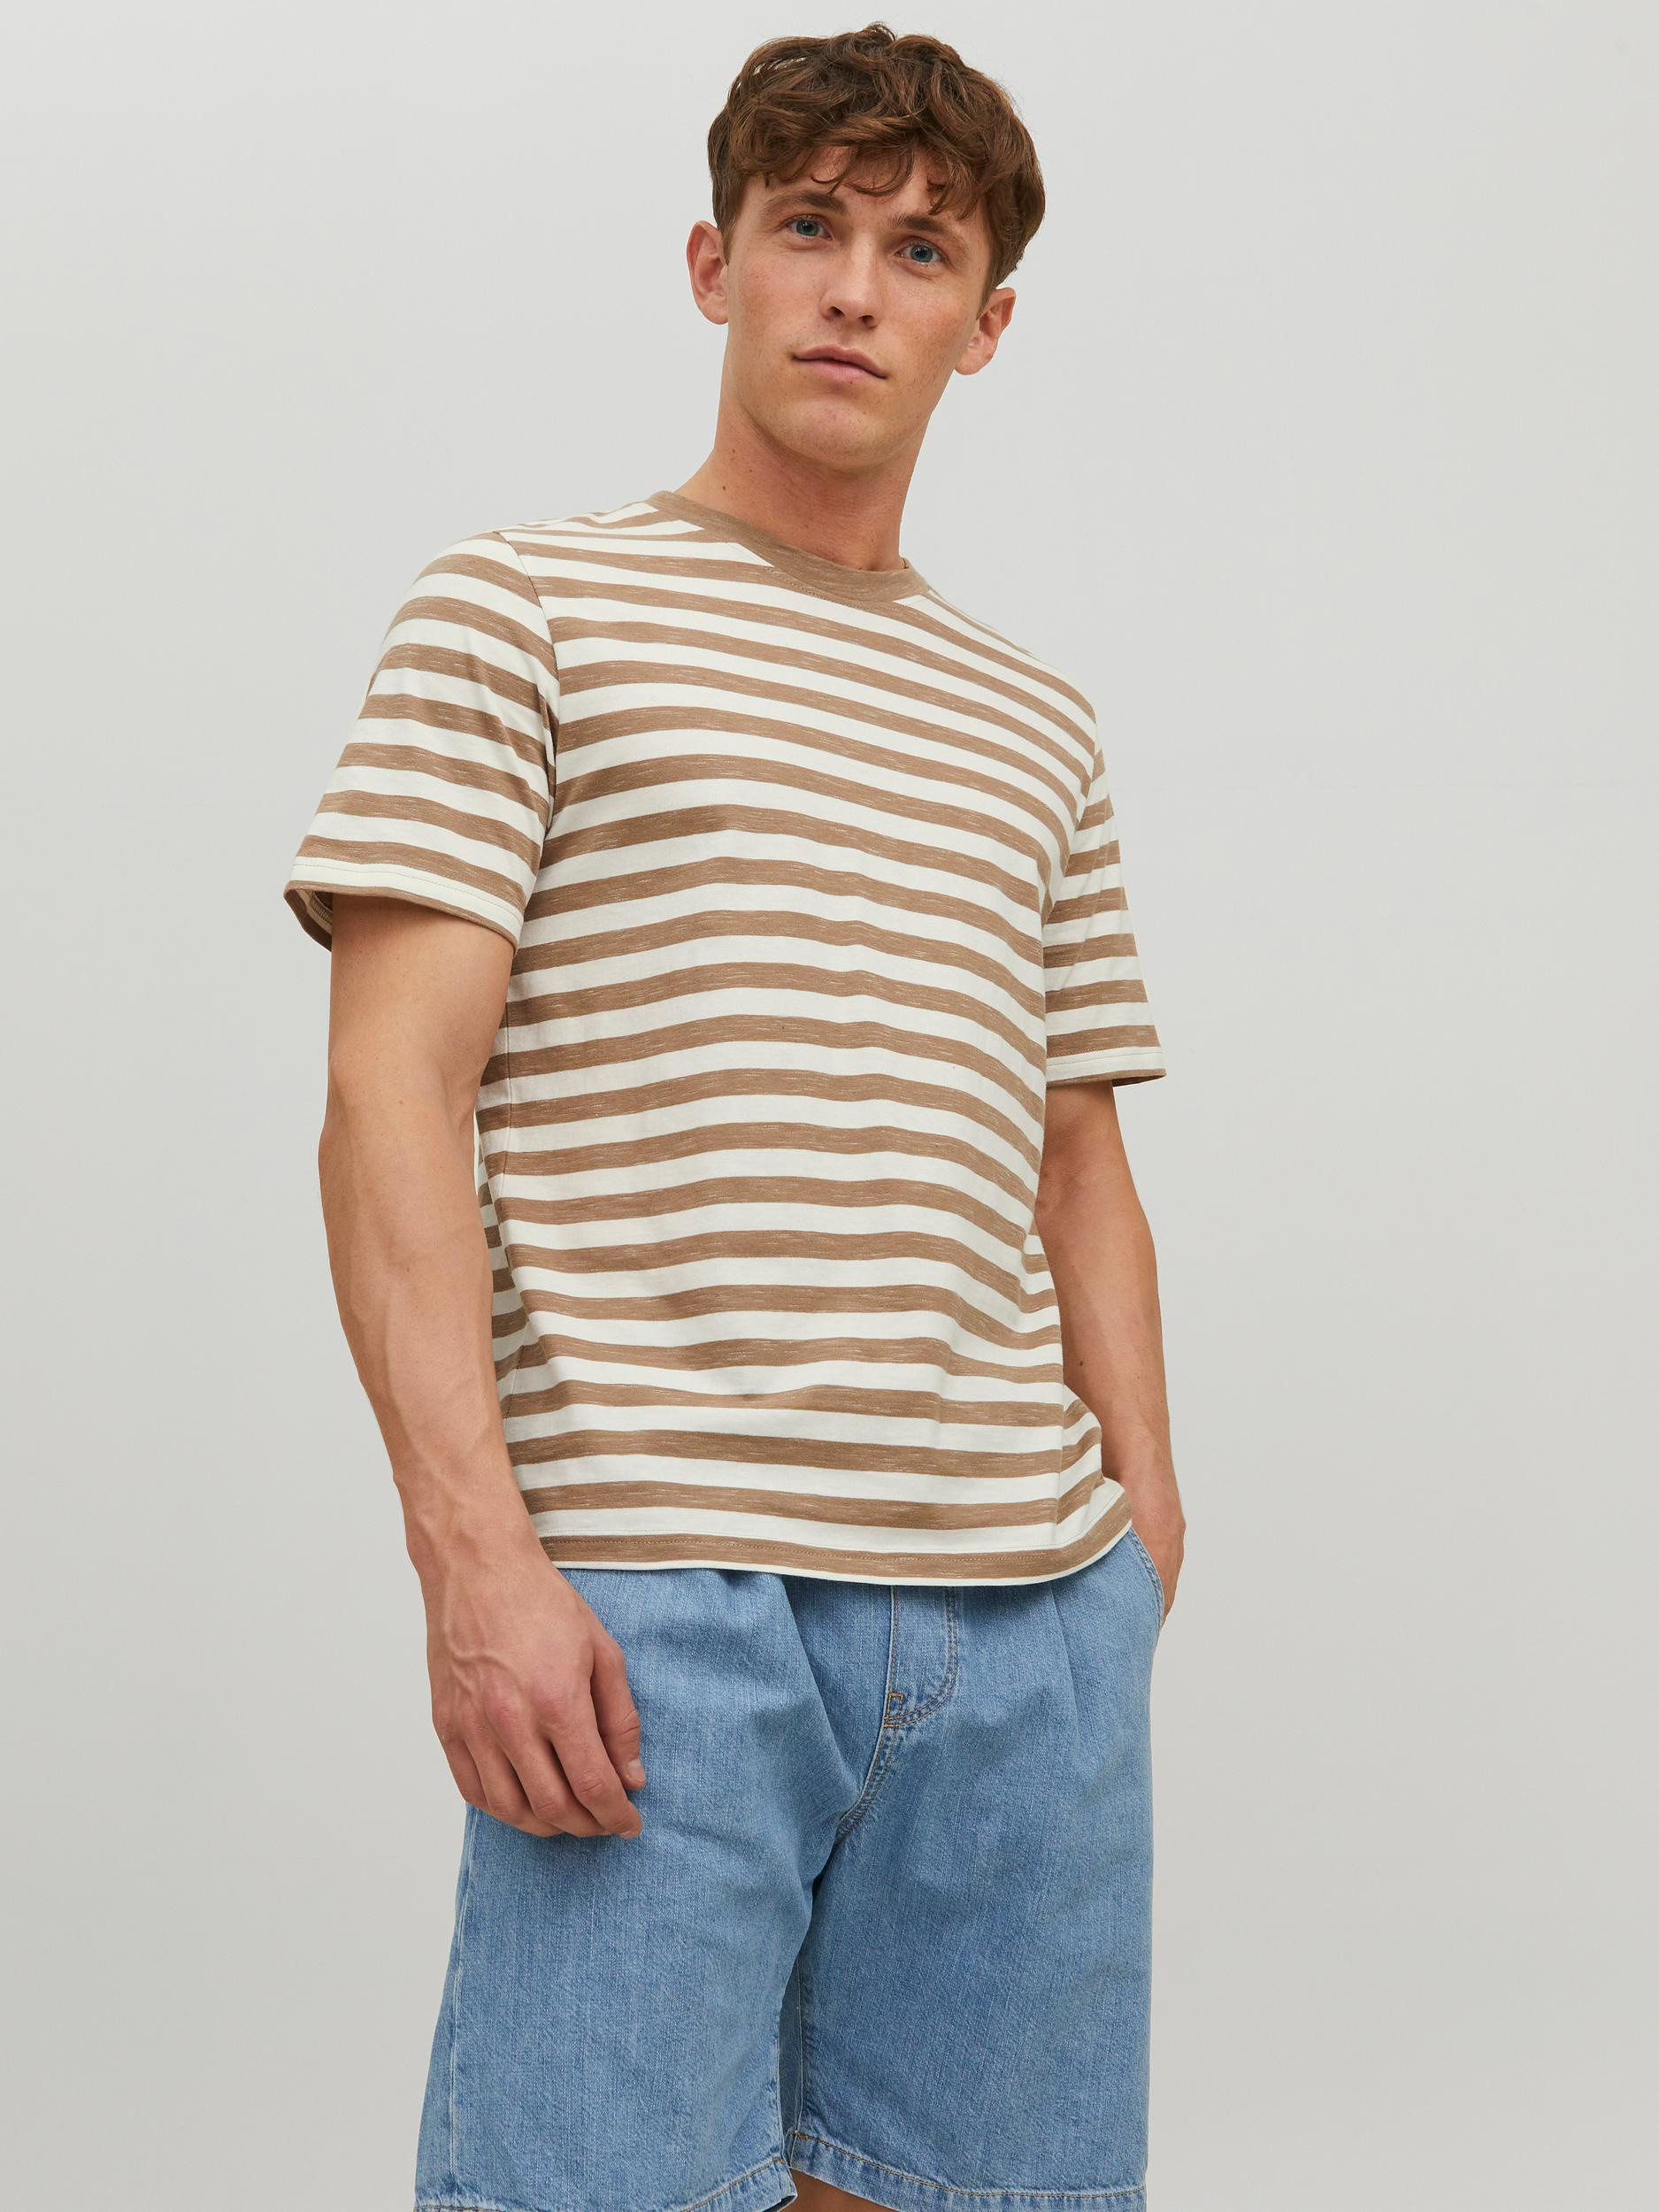 Jack & Jones - Striped T-Shirt, Beige, large image number 3